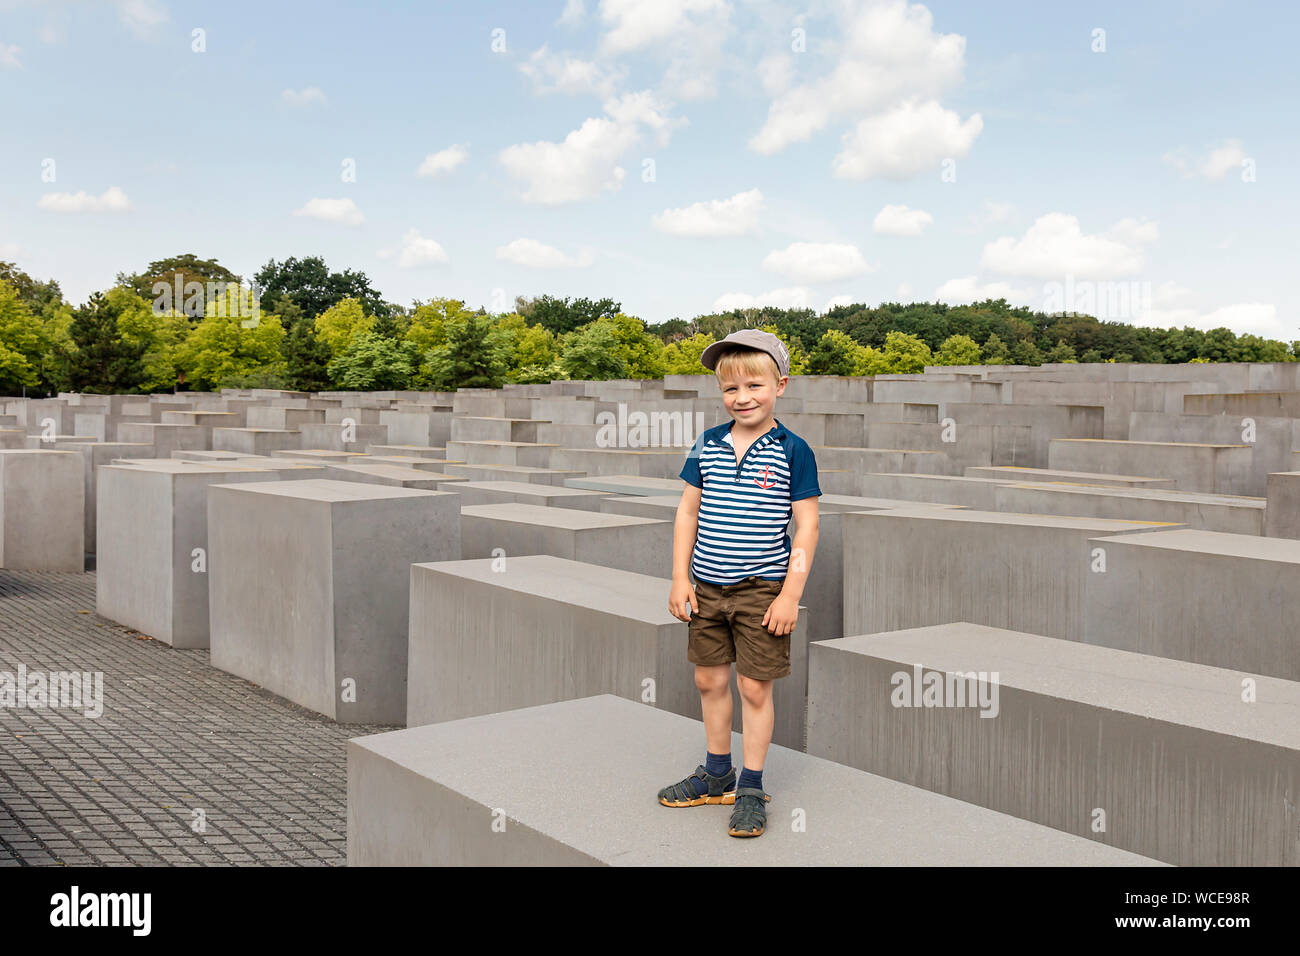 Garçon, 6 ans, en visitant le Mémorial de l'holocauste pour le tué des juifs de l'Europe au cours de la National-socialisme, Berlin, GERMNY. Banque D'Images